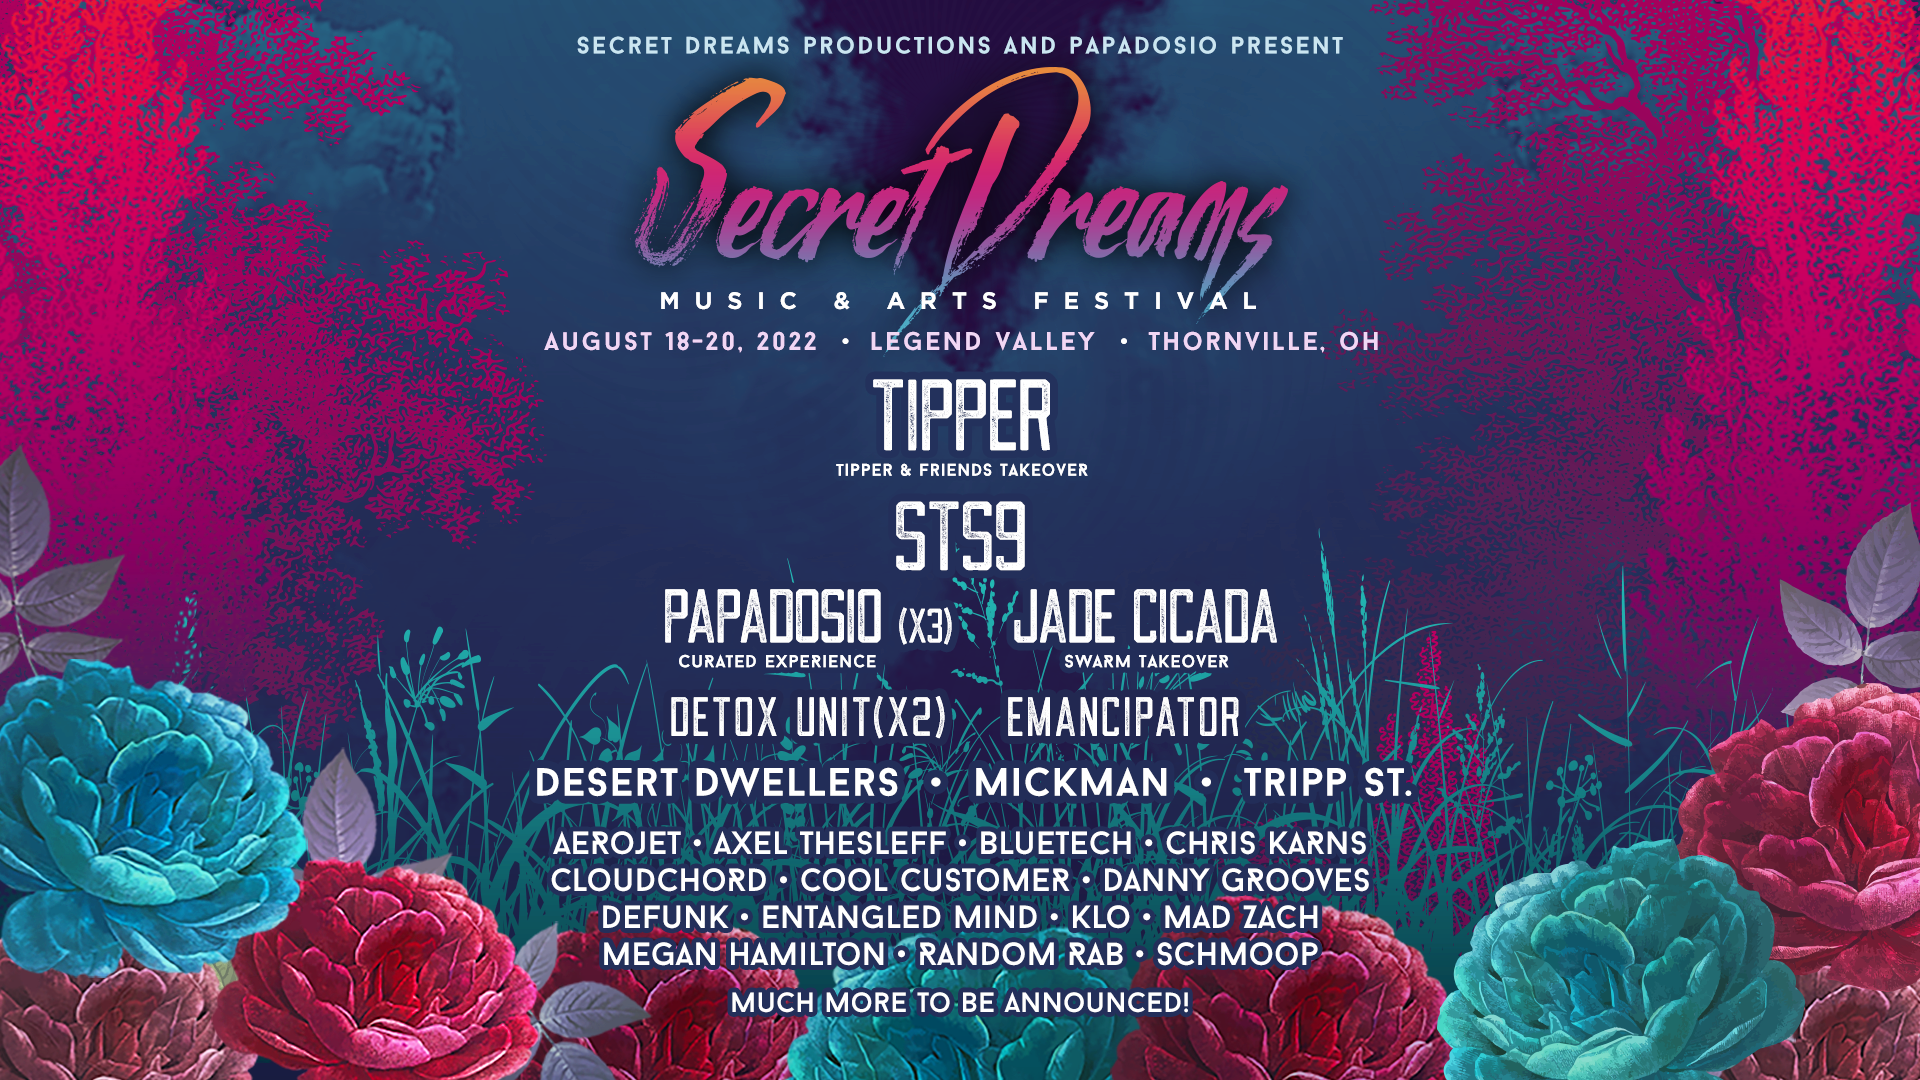 SECRET DREAMS MUSIC & ARTS FESTIVAL - Legend Valley - August 18-20, 2022